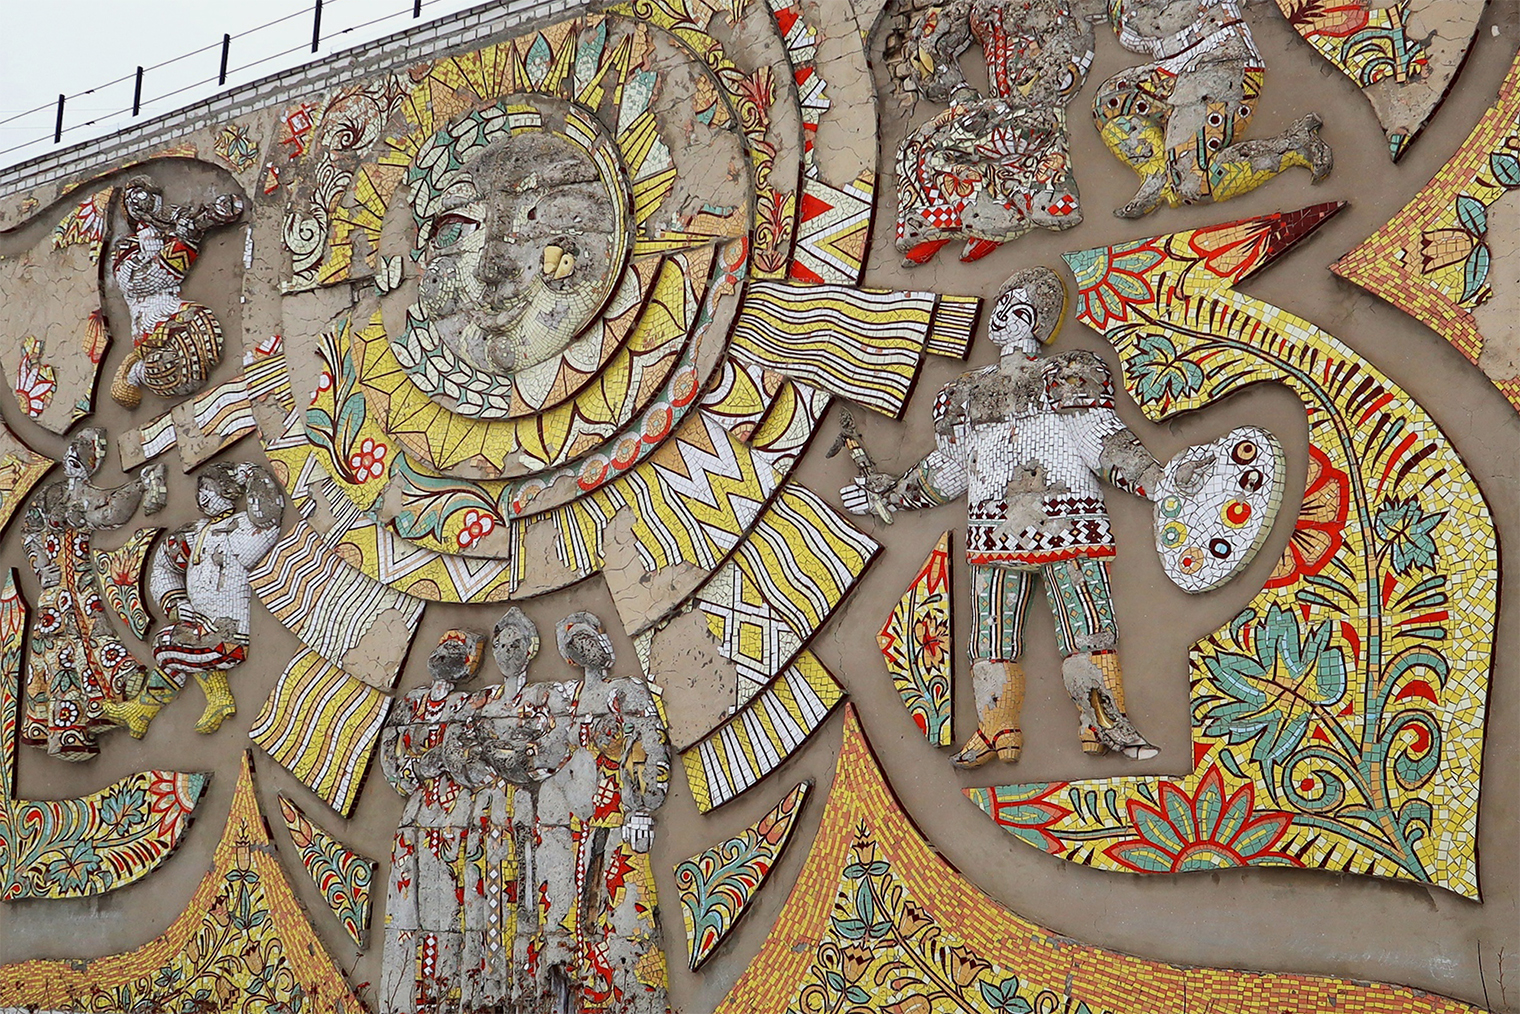 Рельефному мозаичному панно в Володарске тоже срочно нужна реставрация. Источник: группа «Нижегородские мозаики. Сохранение и реставрация» во «Вконтакте»